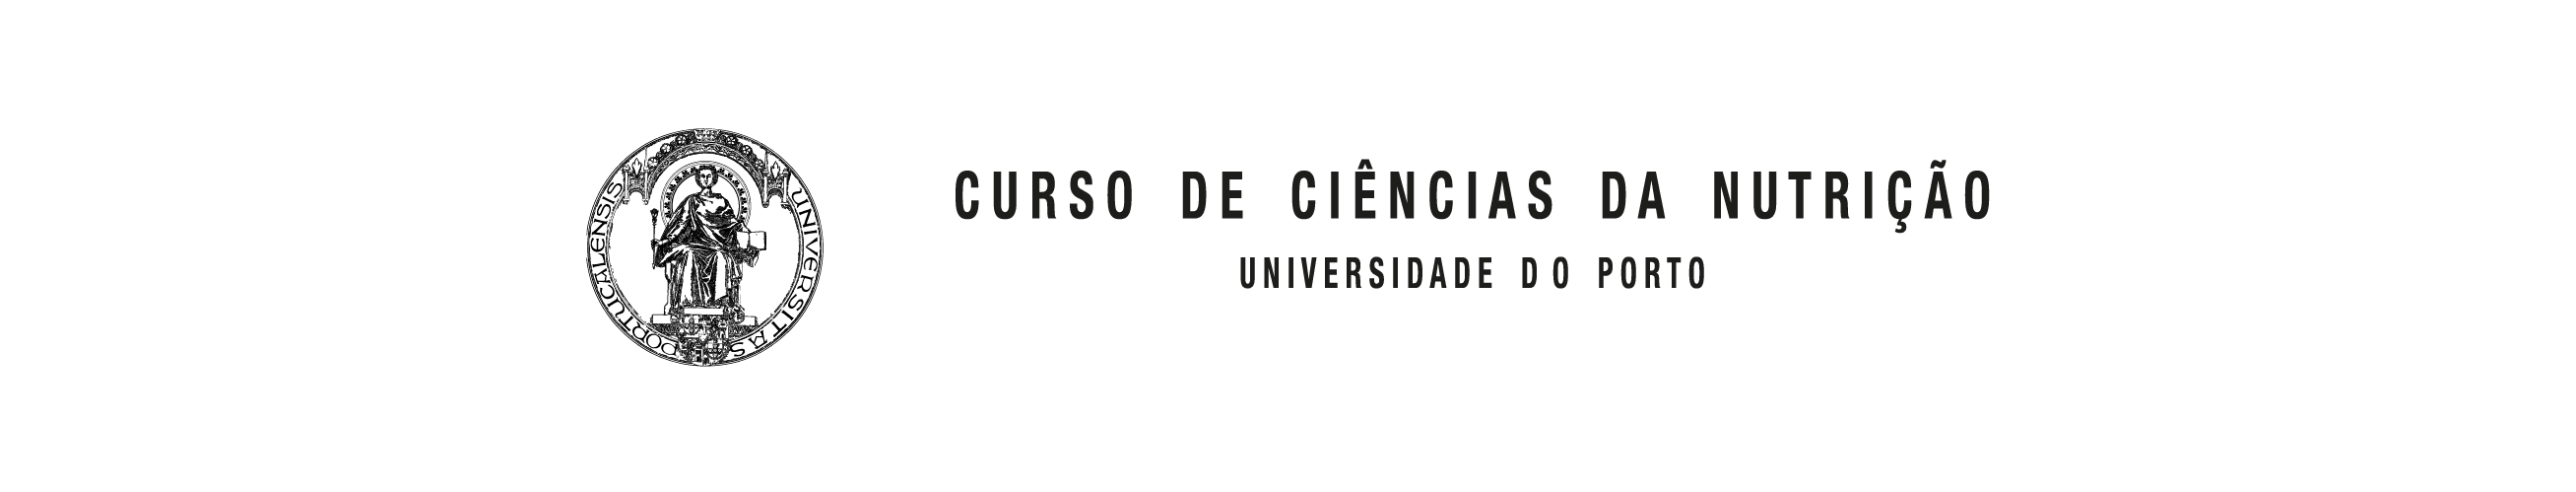 Logótipo - Curso de Ciências da Nutrição - Universidade do Porto (1976)